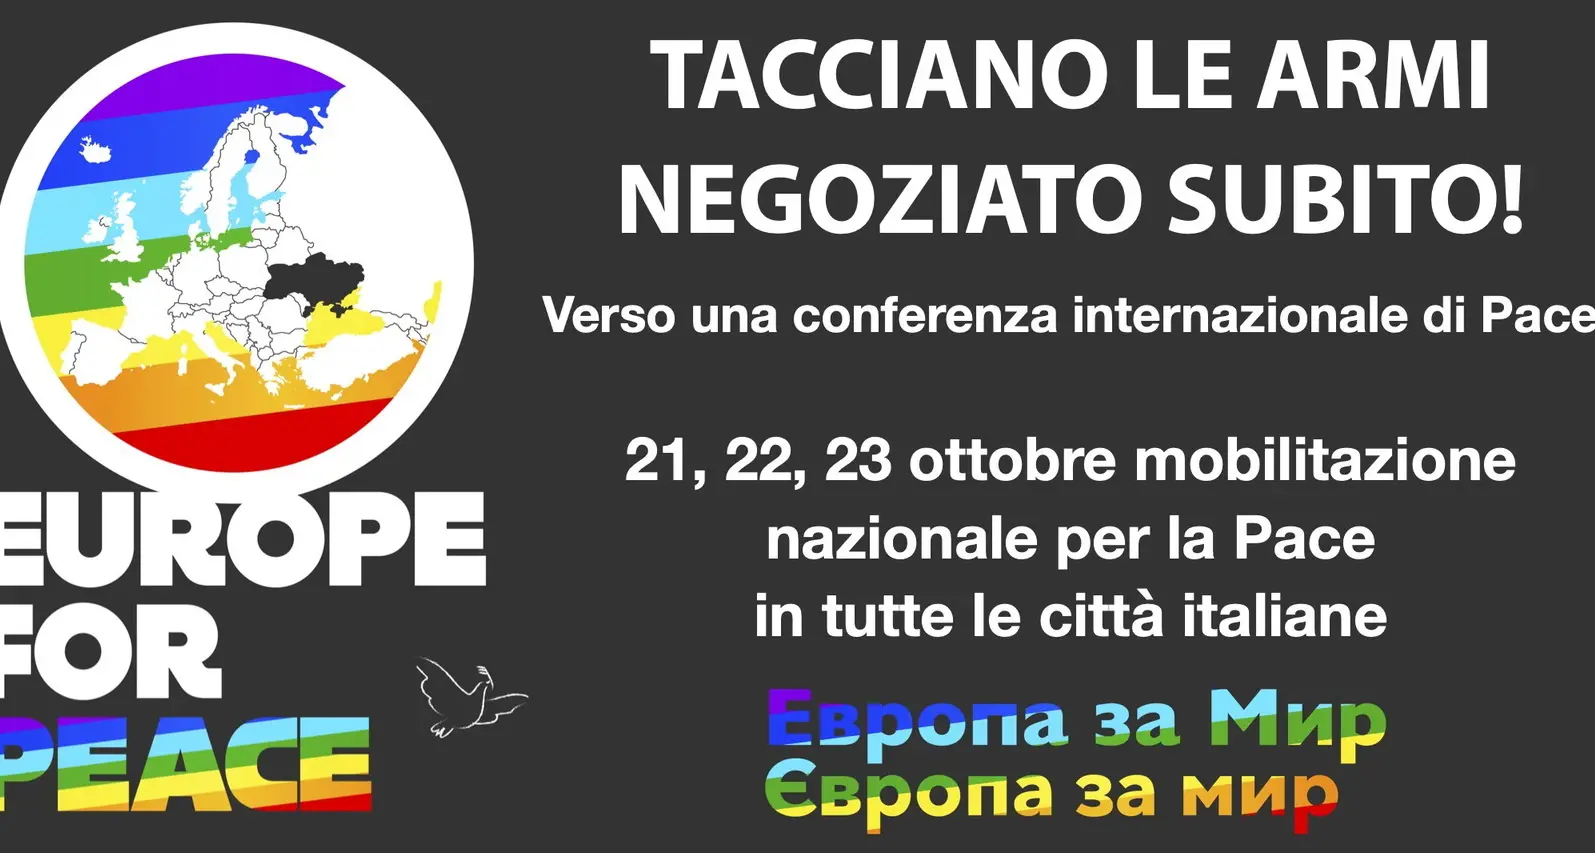 La CGIL aderisce e promuove la mobilitazione diffusa di Europe For Peace che ritorna nelle piazze di tutta Italia dal 21 al 23 ottobre